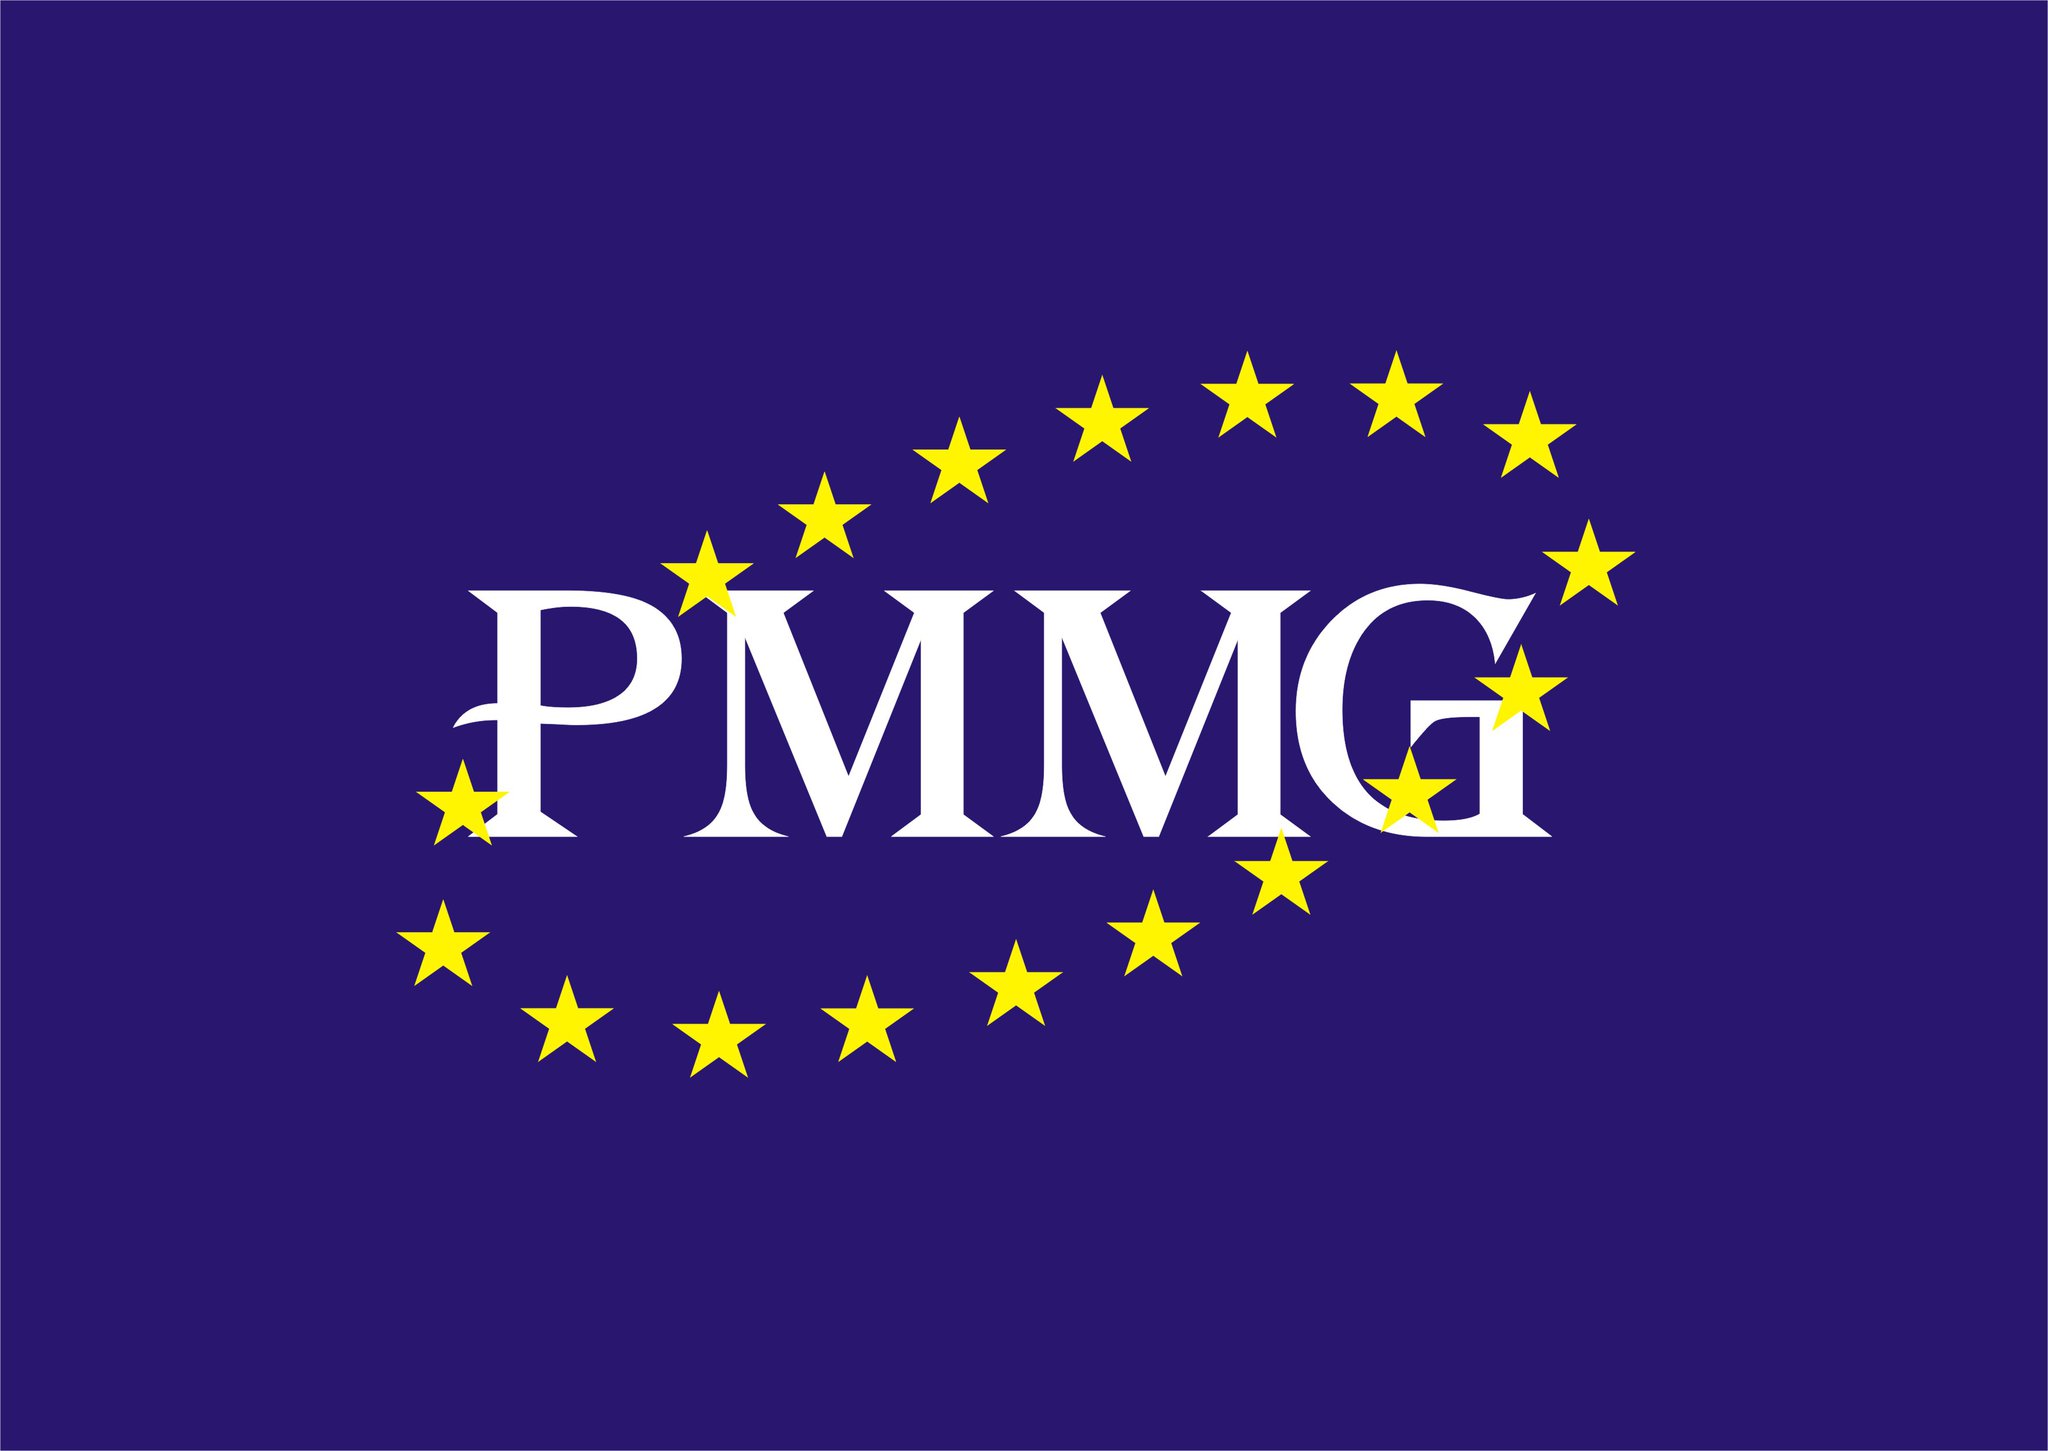 Public Movement - Multinational Georgia